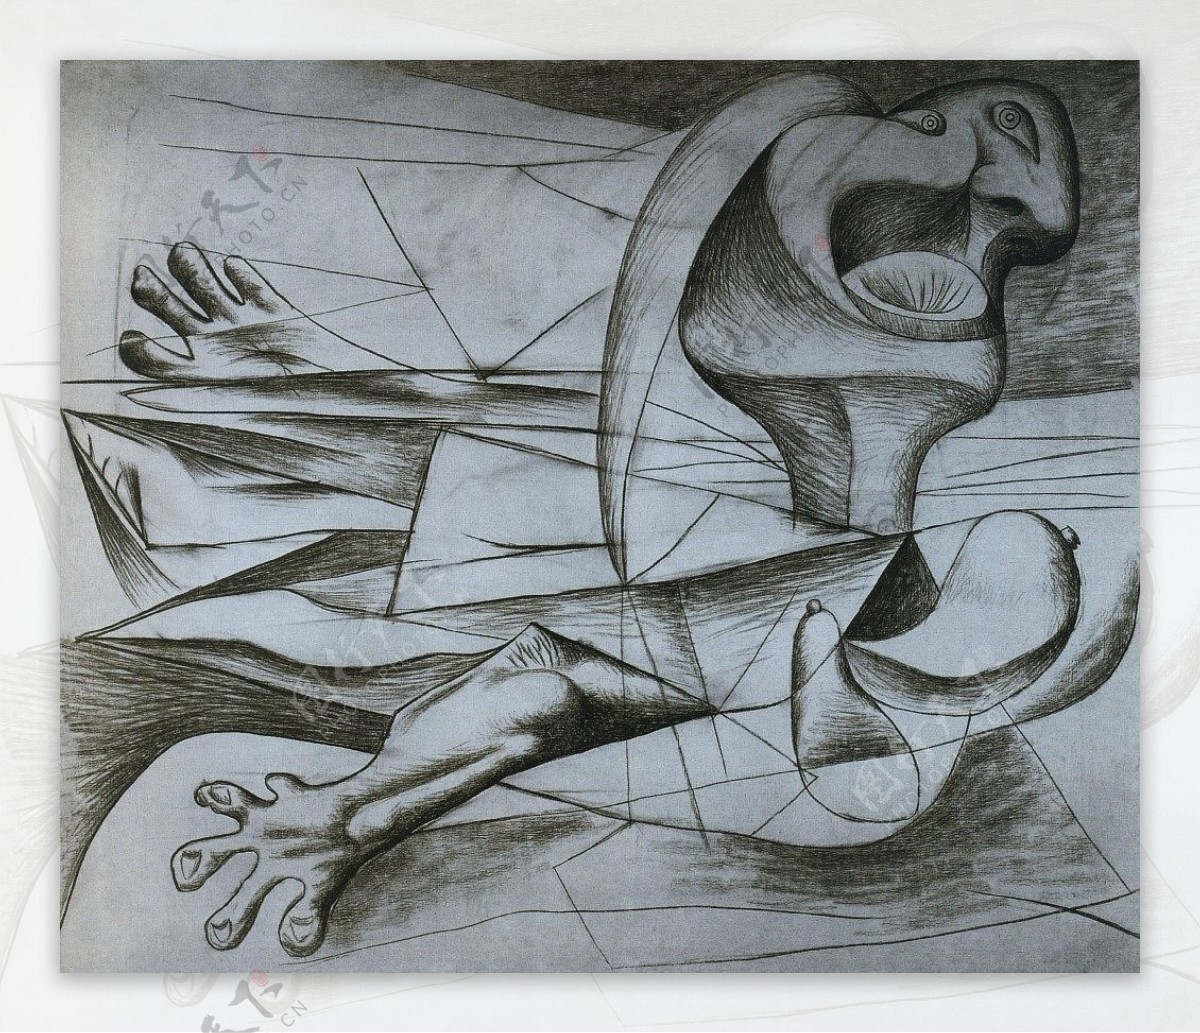 1934Lanageuse西班牙画家巴勃罗毕加索抽象油画人物人体油画装饰画